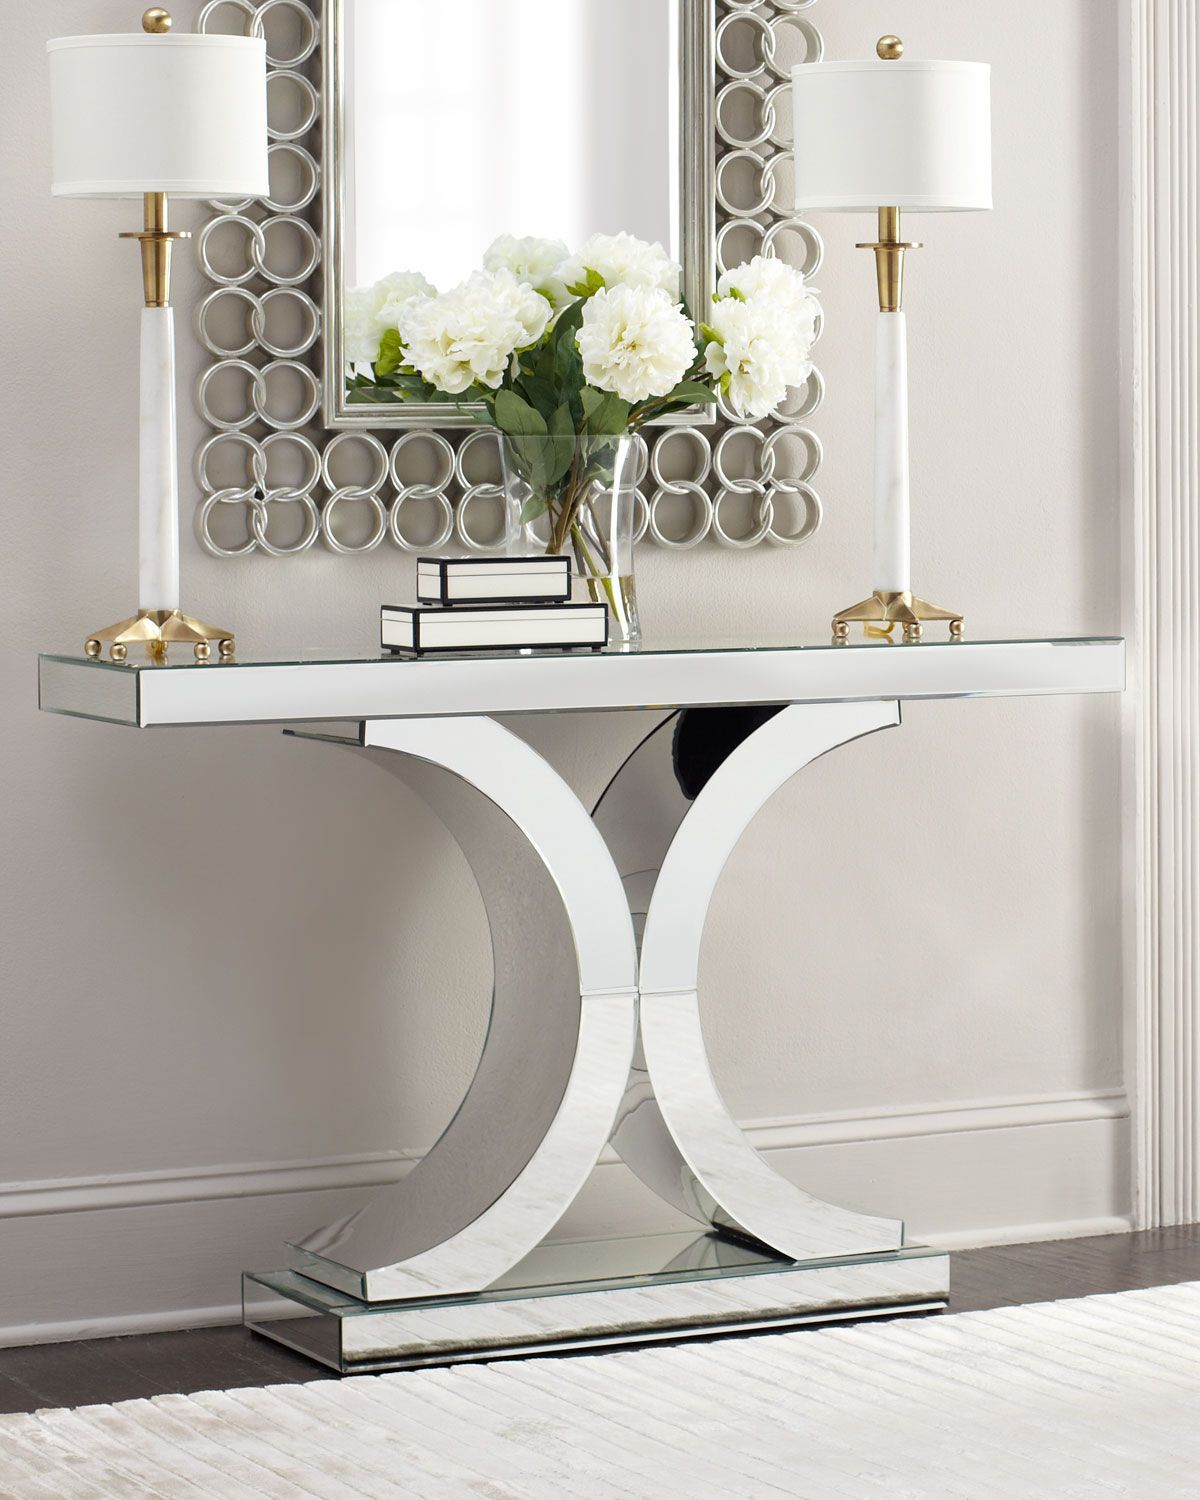 Splendora Mirrored Console | Hall Decor, Console Table Decorating, Home Within Mirrored Console Tables (View 2 of 20)